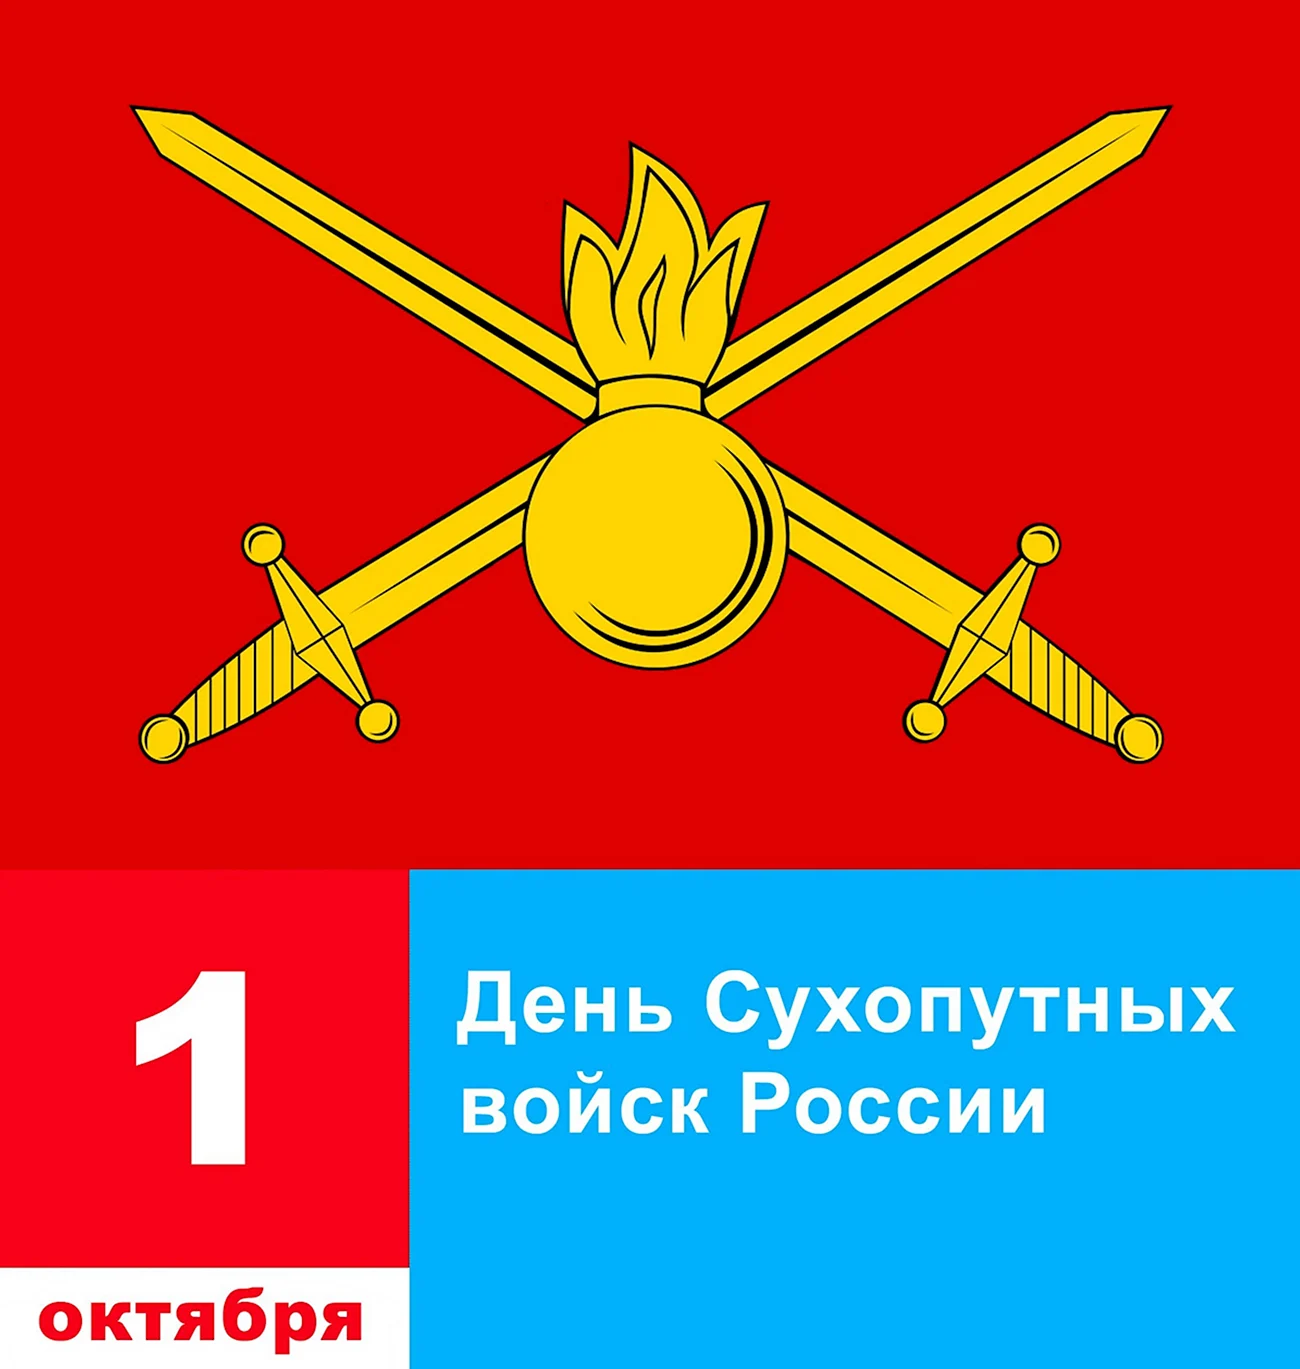 Эмблема Вооруженных сил Российской Федерации Сухопутные войска. Поздравление